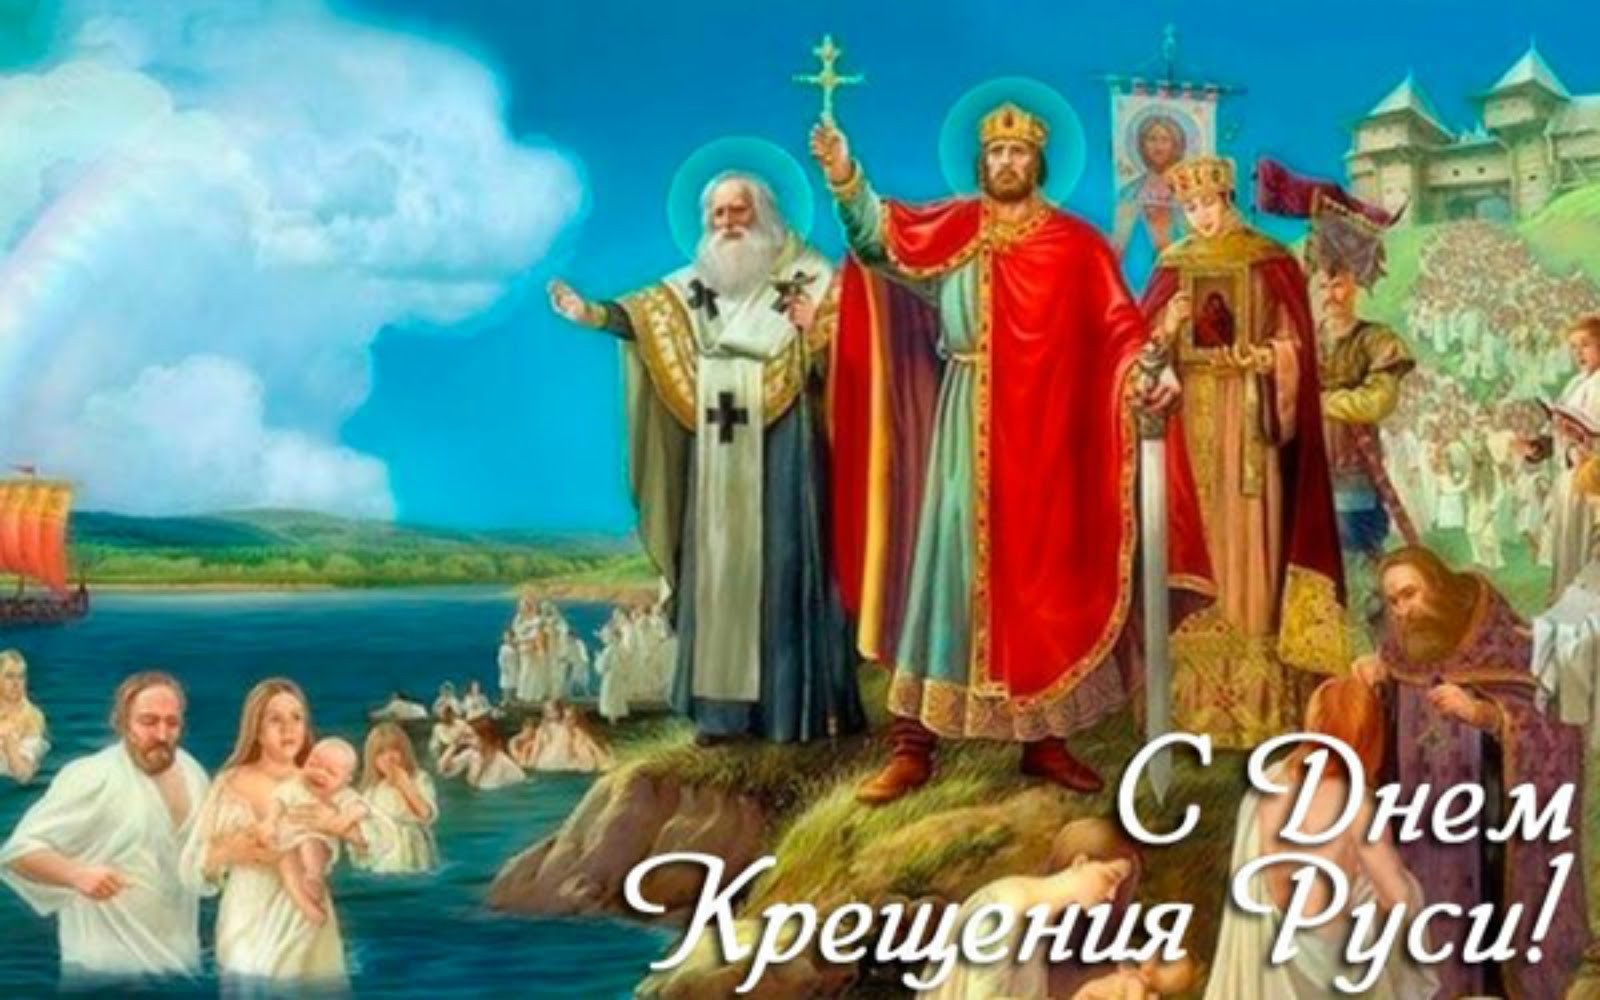 Первый православный князь. 988 Г. – крещение князем Владимиром Руси.